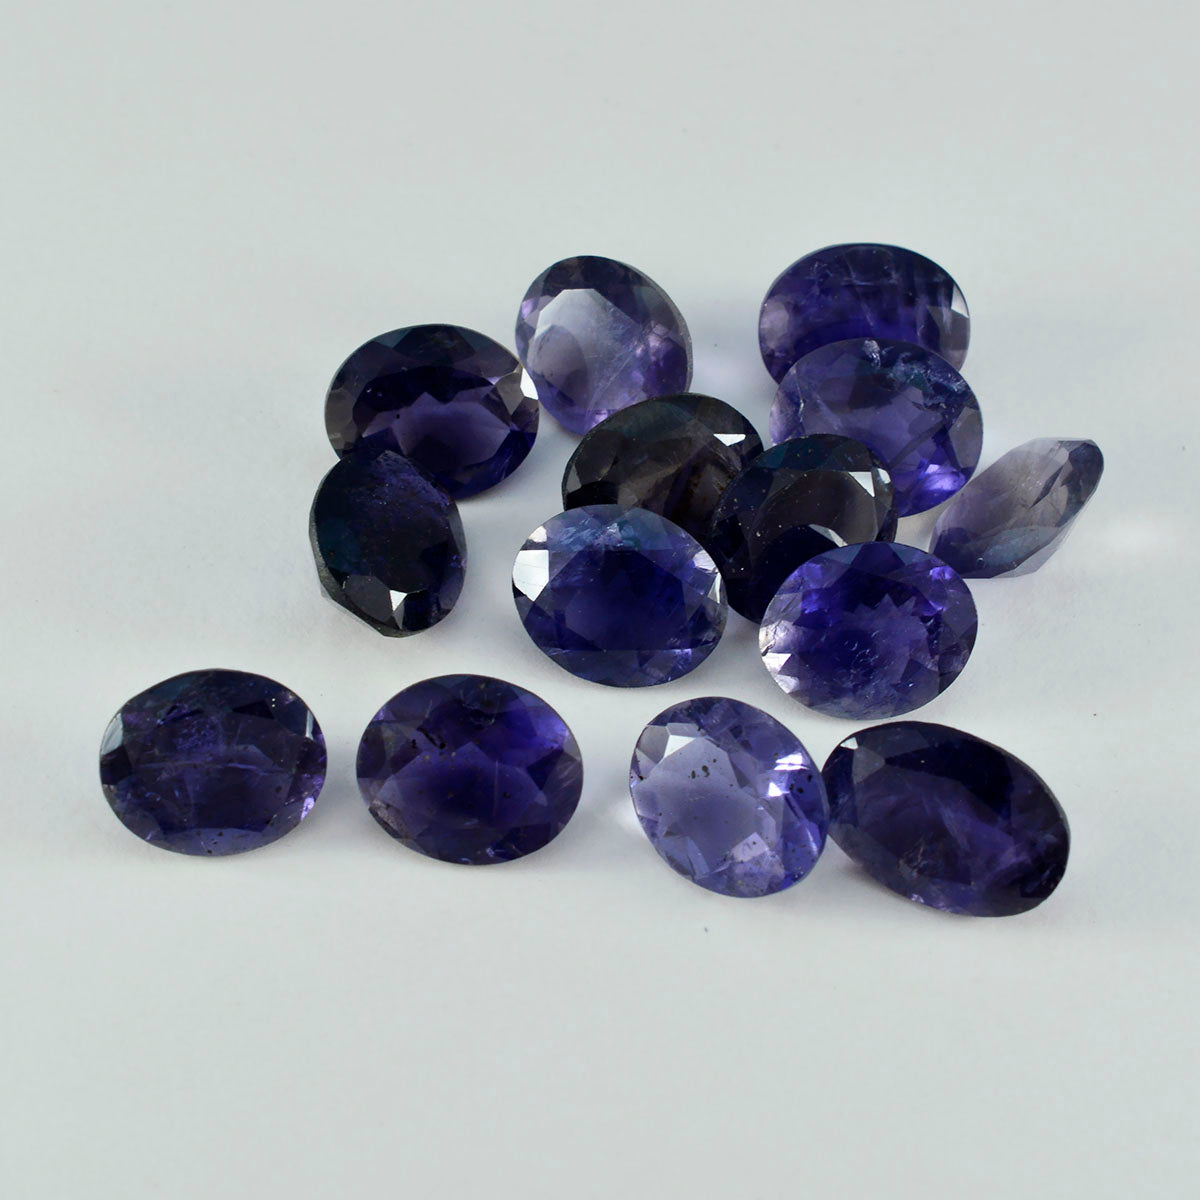 riyogems 1шт синий иолит ограненный 8x10 мм овальной формы качественный сыпучий драгоценный камень